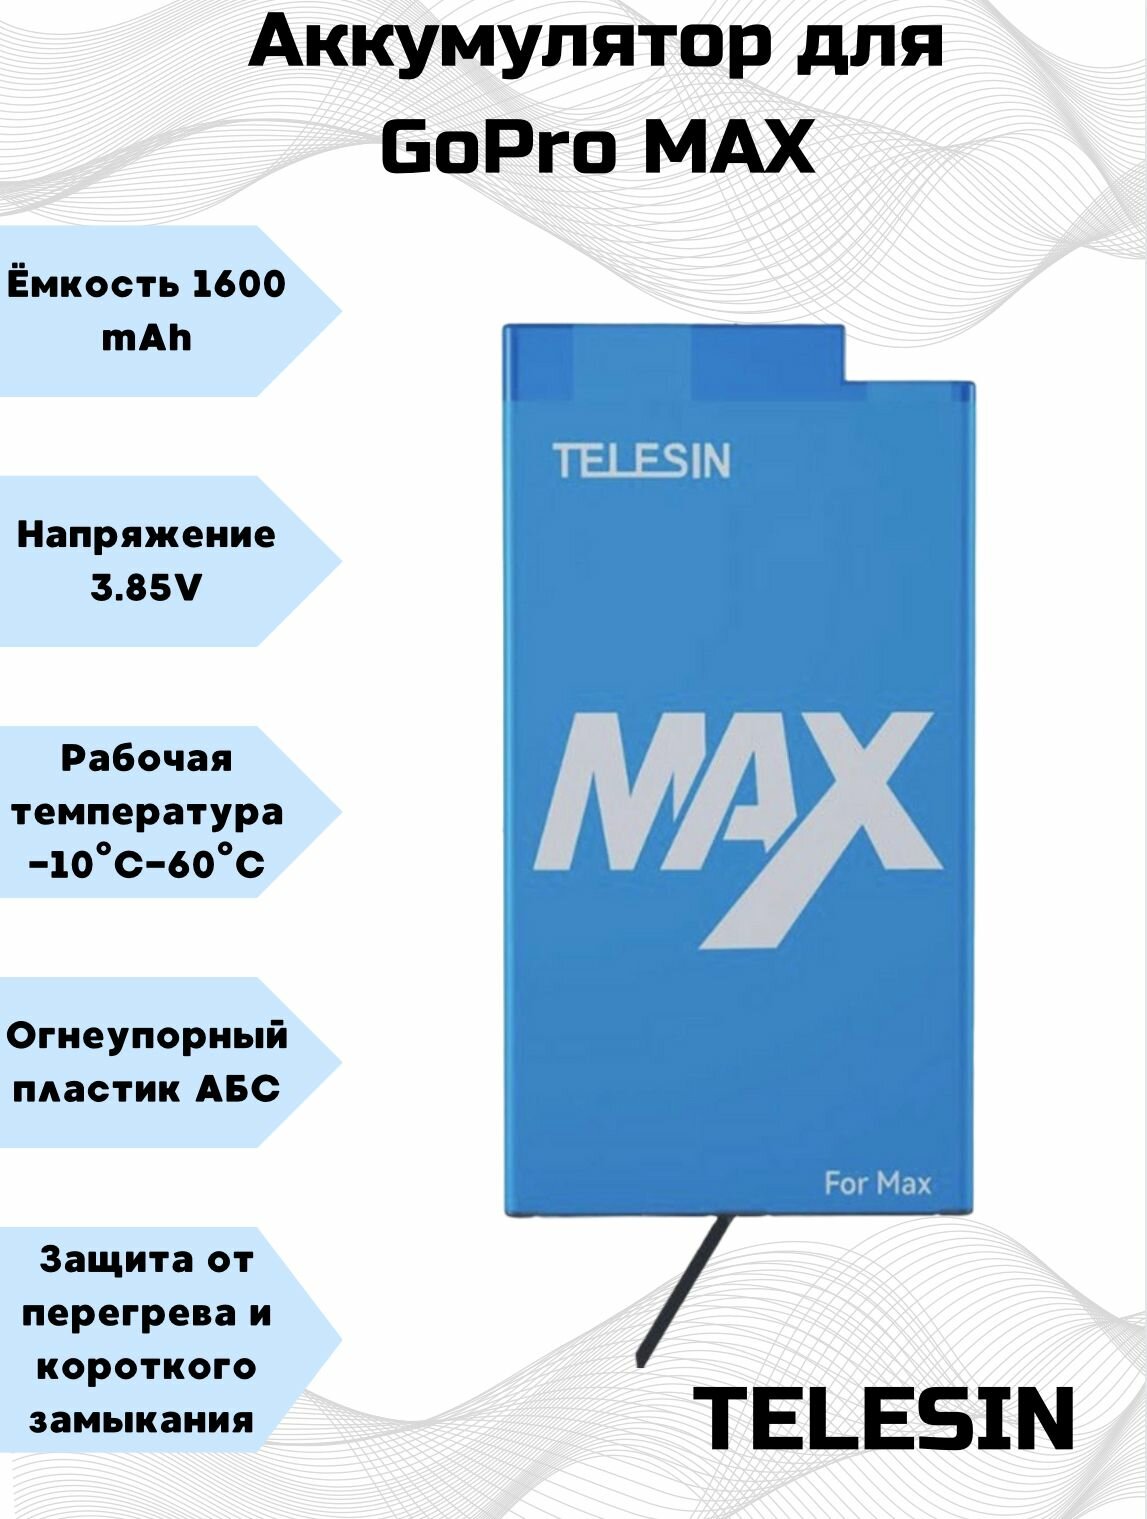 Аккумулятор для GoPro Max Telesin